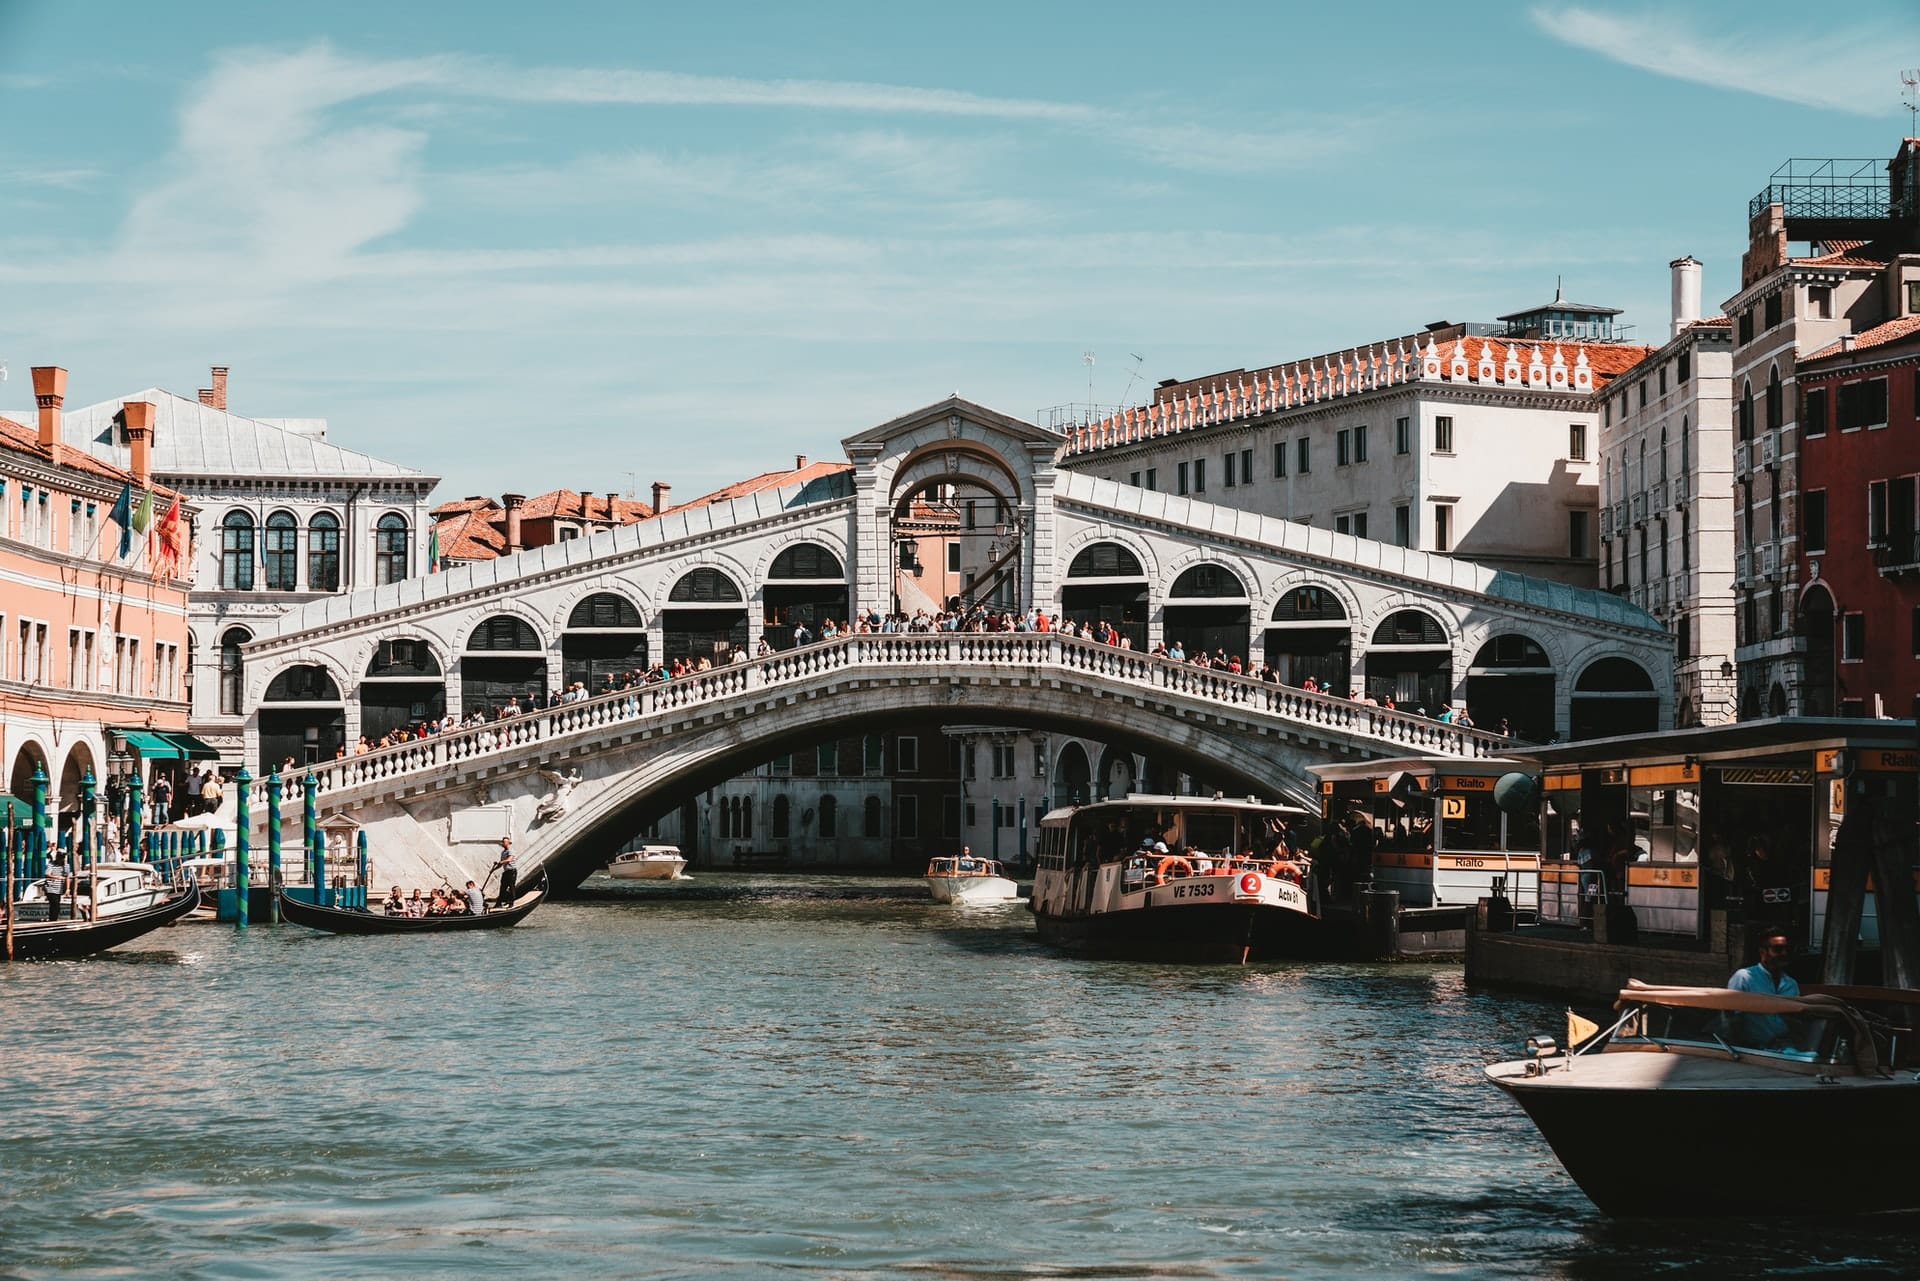 Al otro lado del Gran Canal de San Marco, el sestiere San Polo es un barrio muy céntrico de Venecia y la mejor zona para quienes visitan la ciudad por primera vez